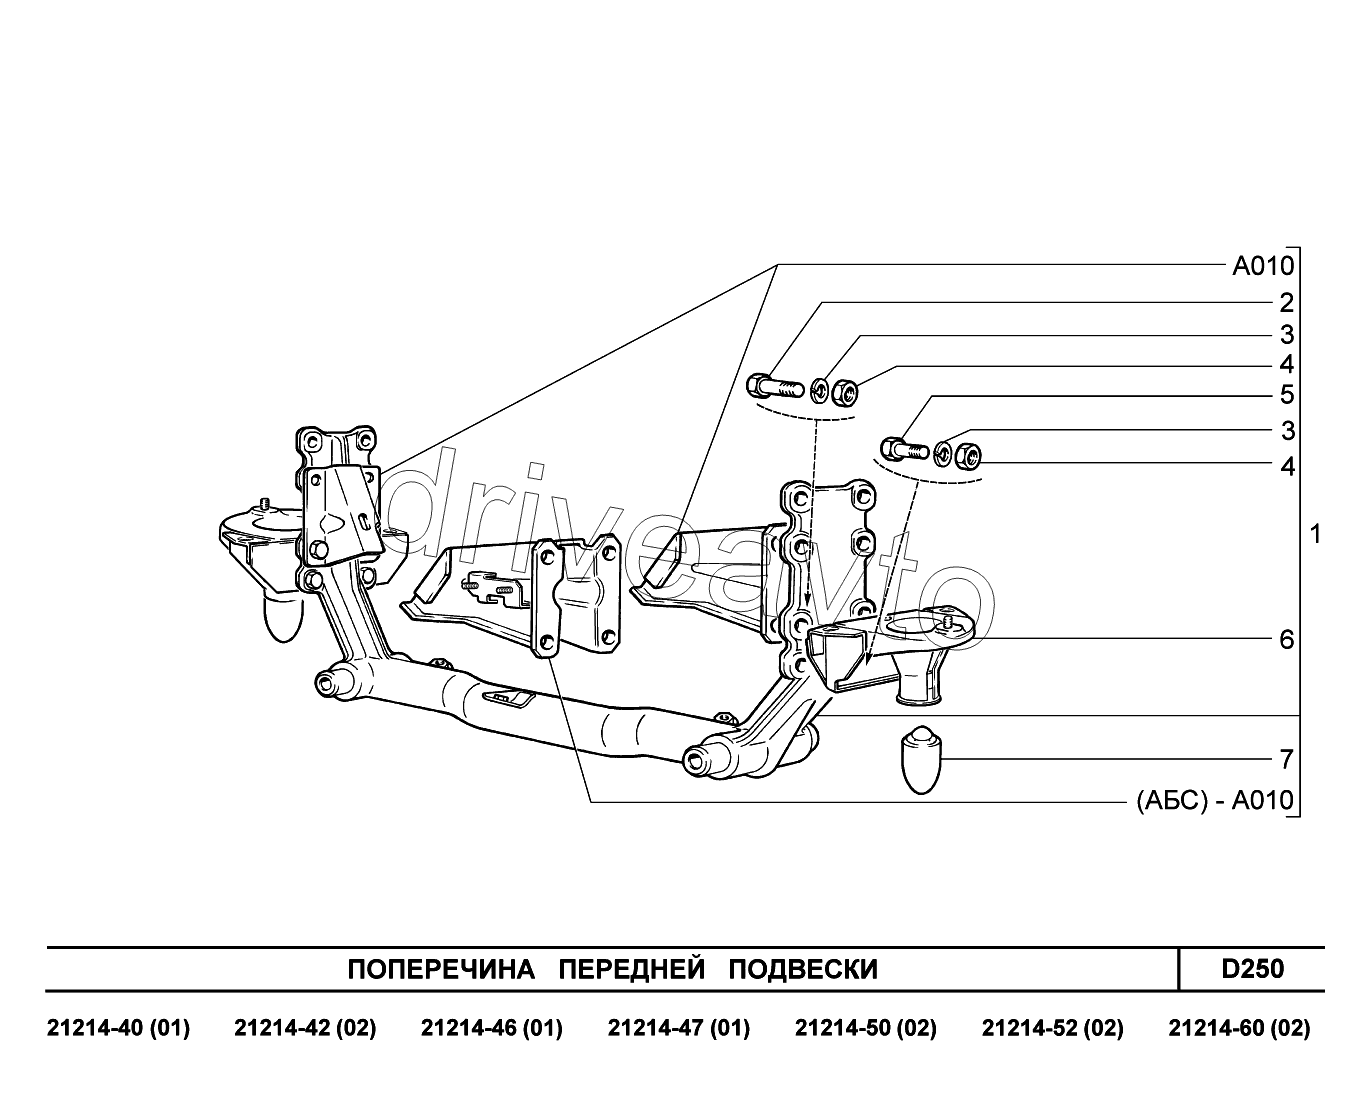 D250. Поперечина передней подвески